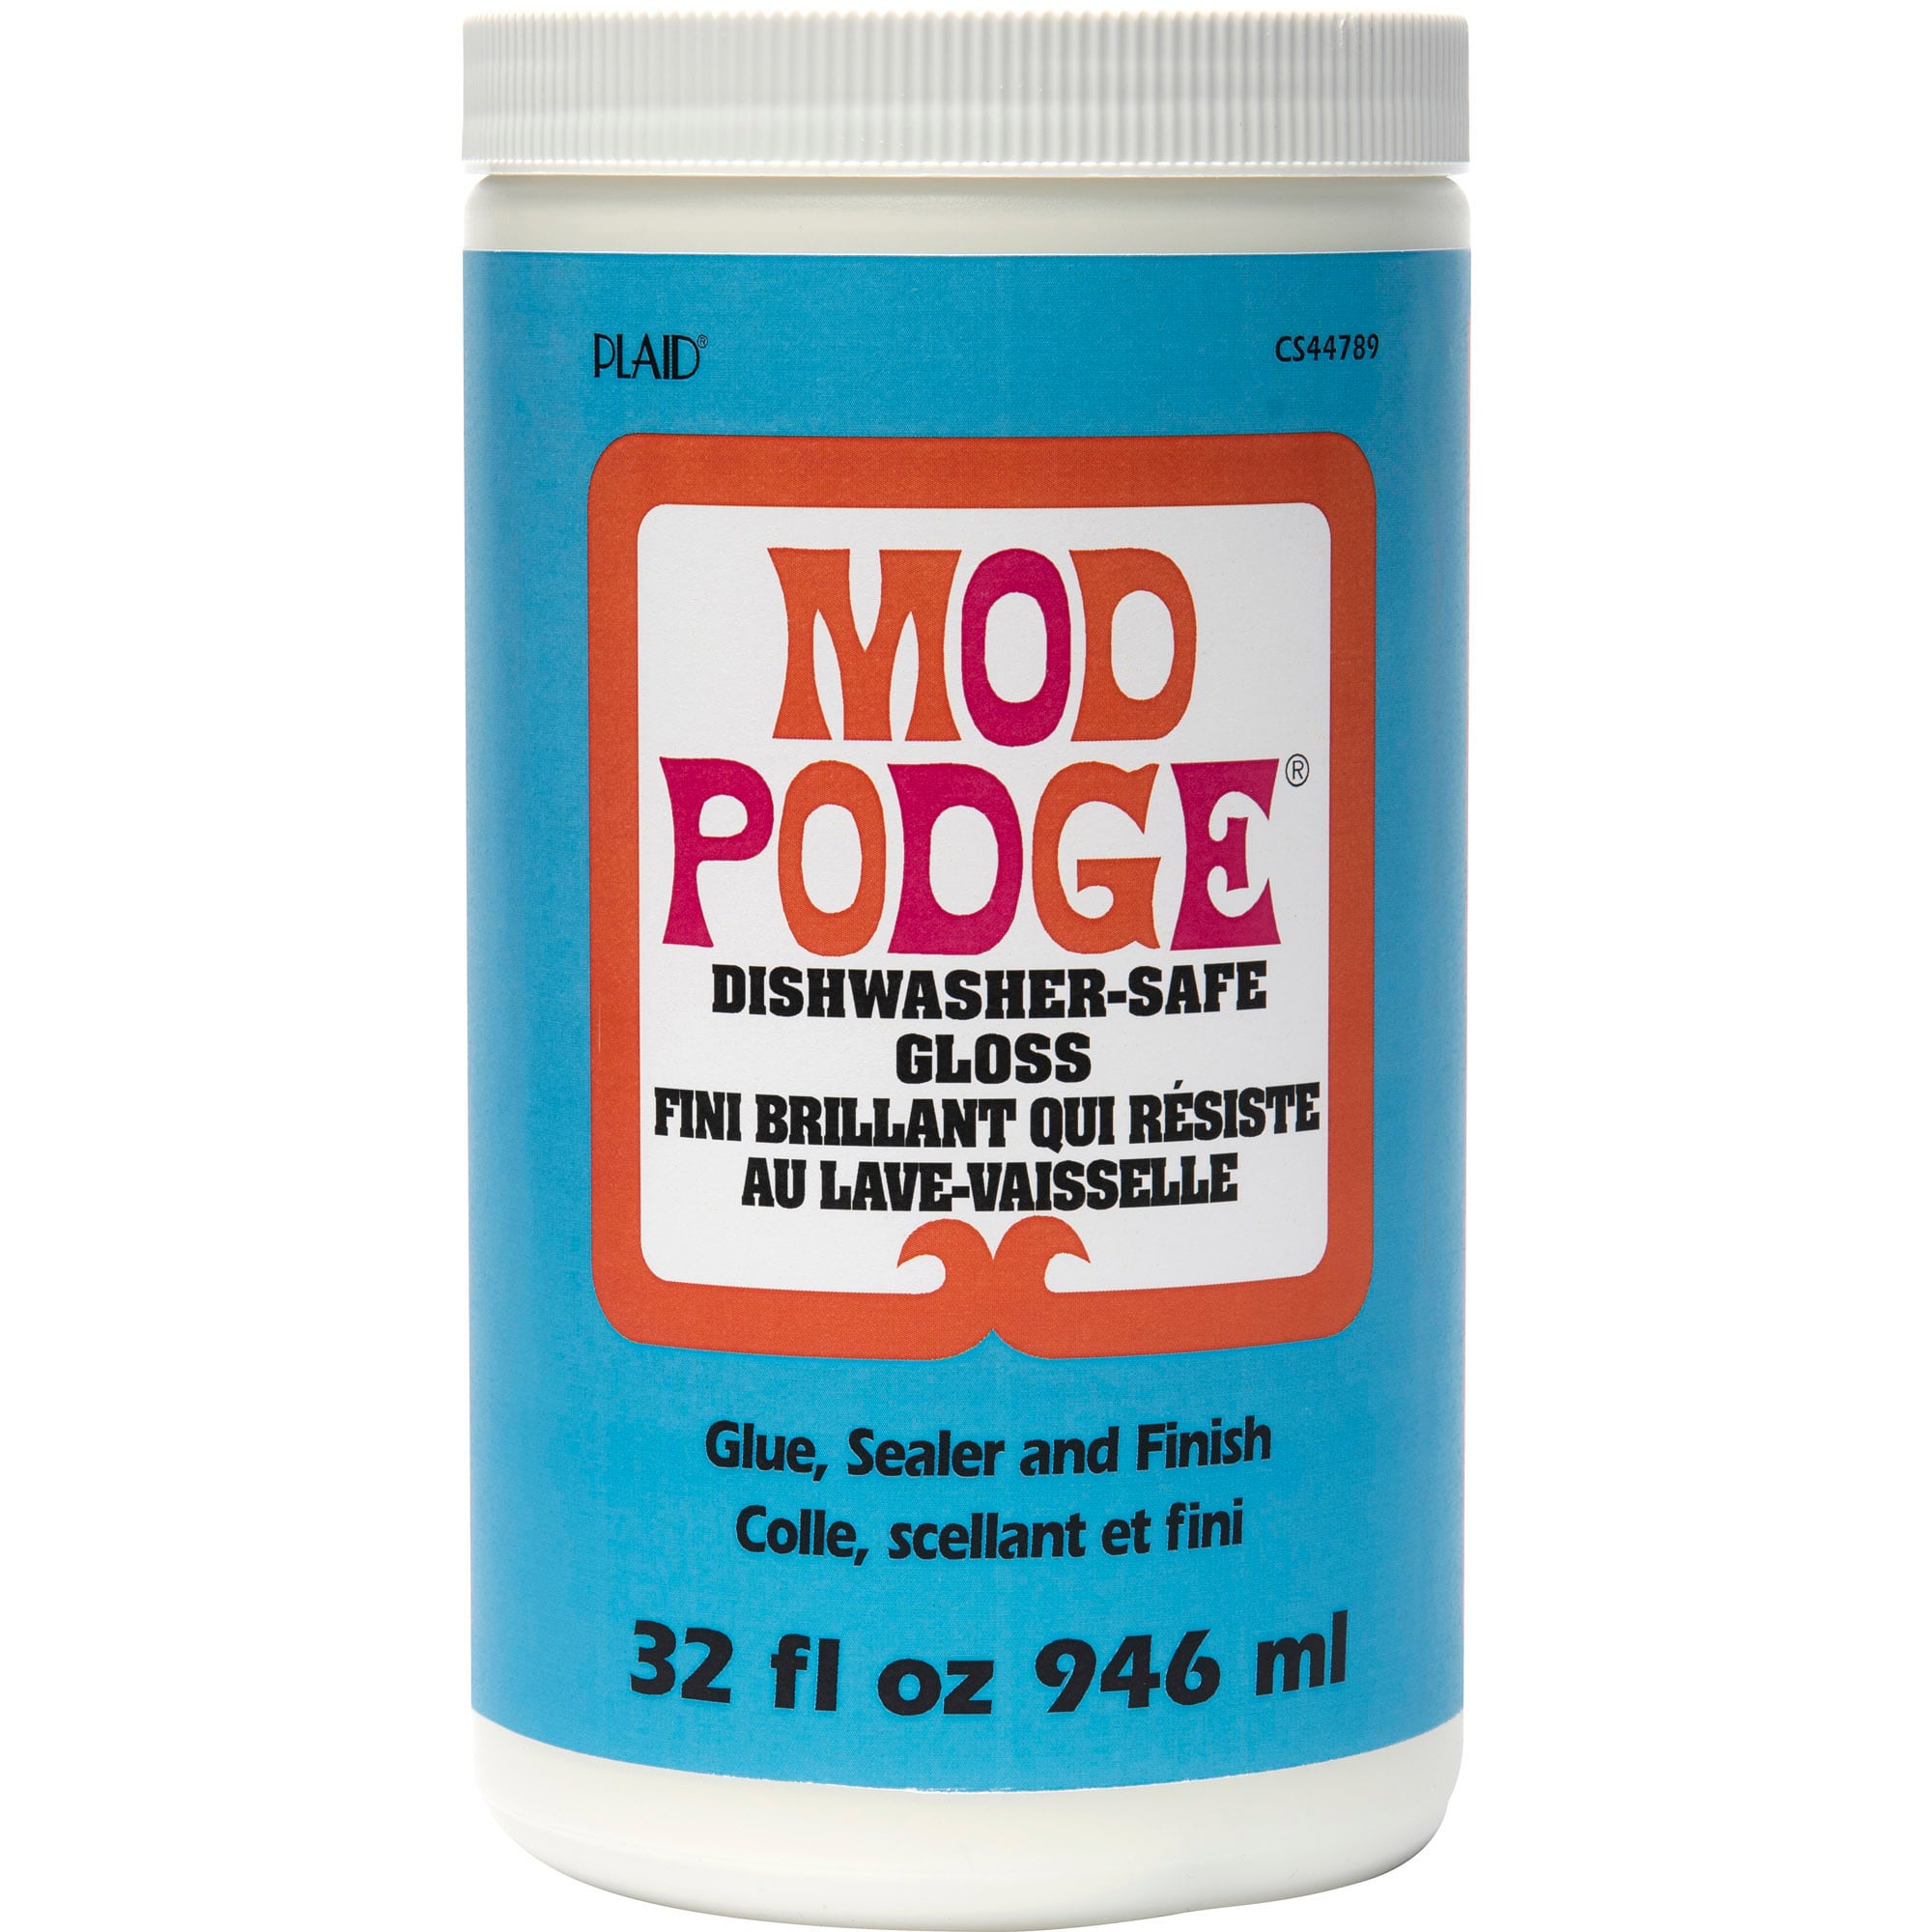 NEW Mod Podge Formulas - New Product Showcase 2022, creativity, dishwasher